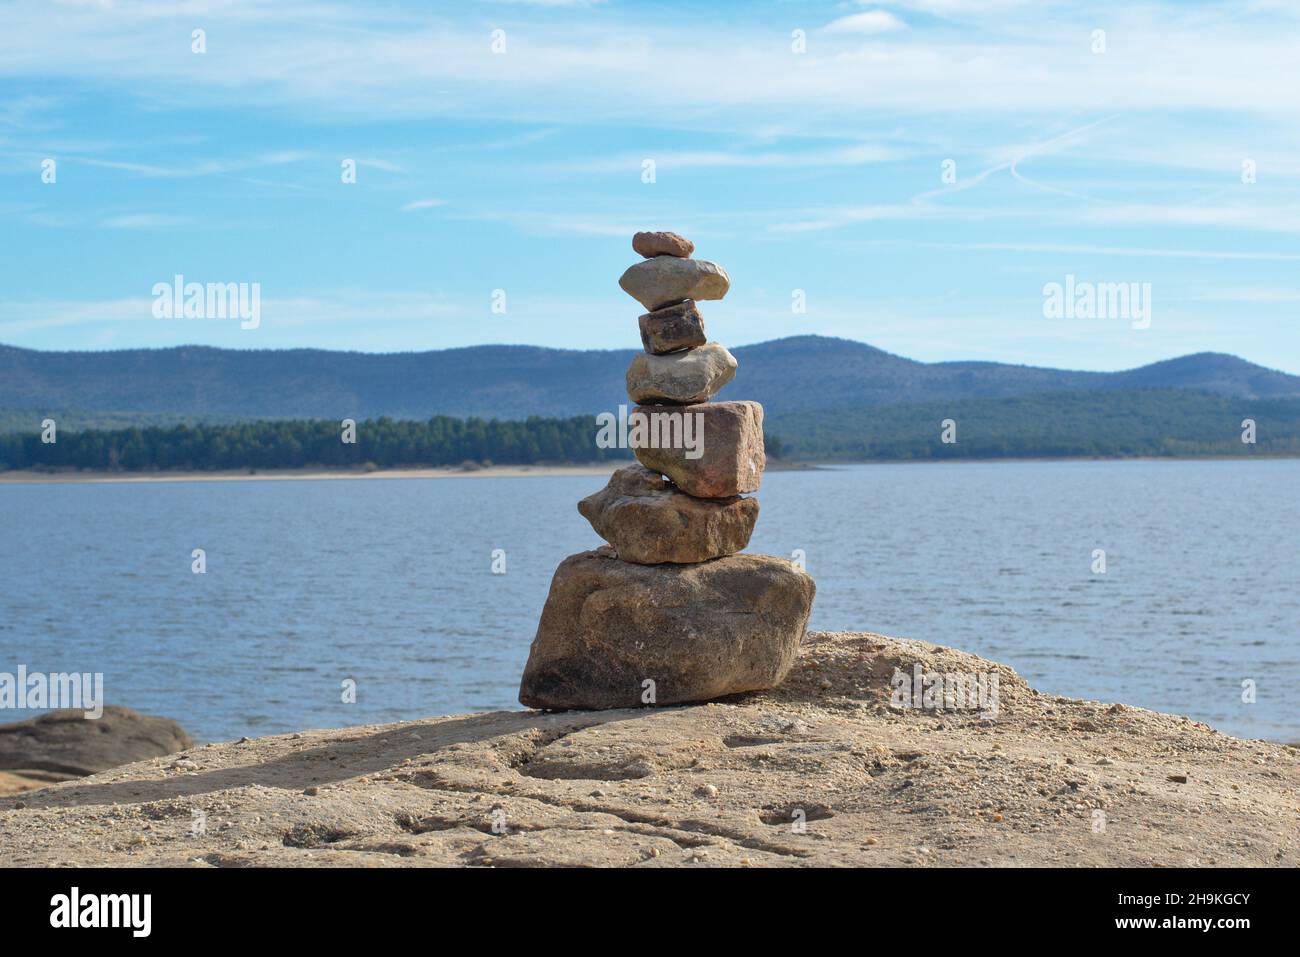 Mucchio di pietre accatastate dal lago. Simbolo di bilanciamento interno. Lago e montagna con pini sullo sfondo. Foto Stock